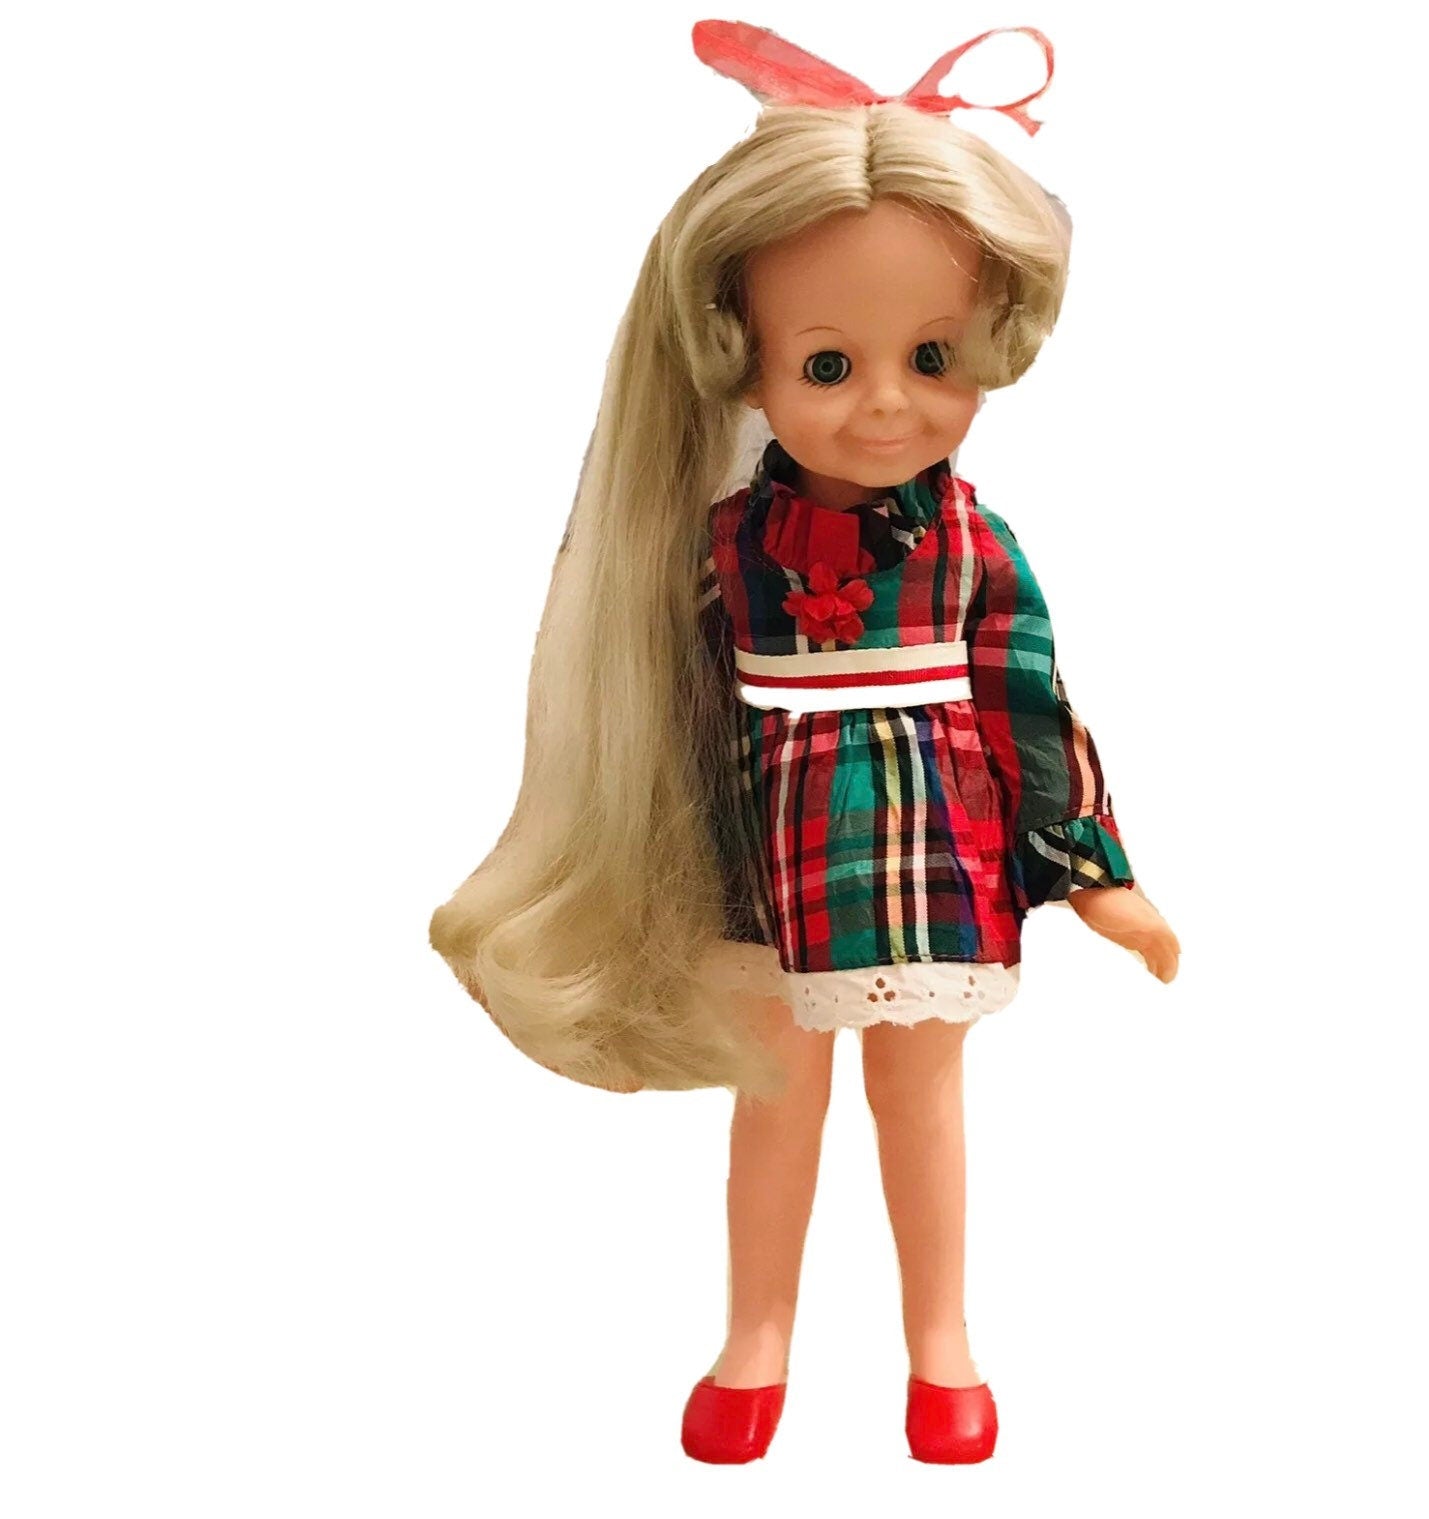 Velvet Doll, OOAK Velvet, Vintage Ideal Doll, Green Eyes, Art Doll, Look Around, 15 Inch, Crissy Family Doll, Fashion Doll, Rare, 1969 - A. Mandaline Art